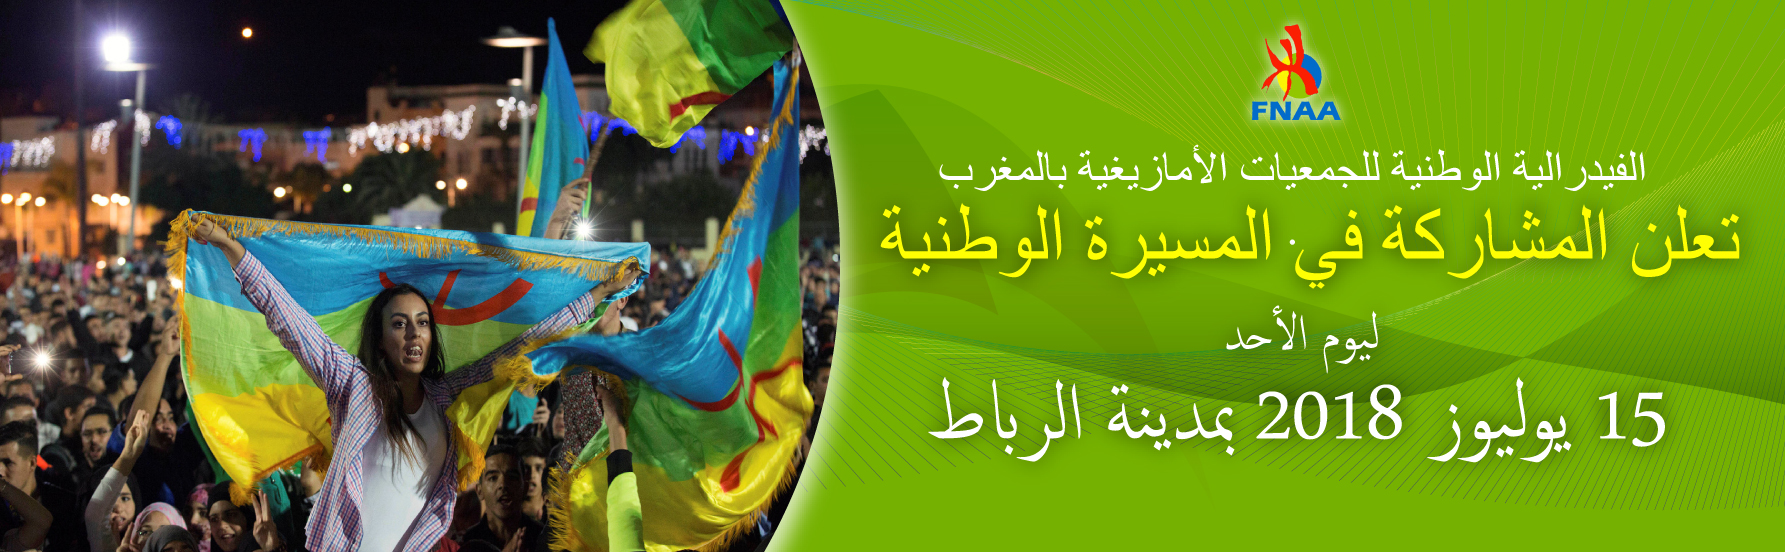 الفيدرالية الوطنية للجمعيات الأمازيغية بالمغرب تعلن المشاركة في المسيرة الوطنية ليوم الأحد 15 يوليوز 2018 بمدينة الرباط